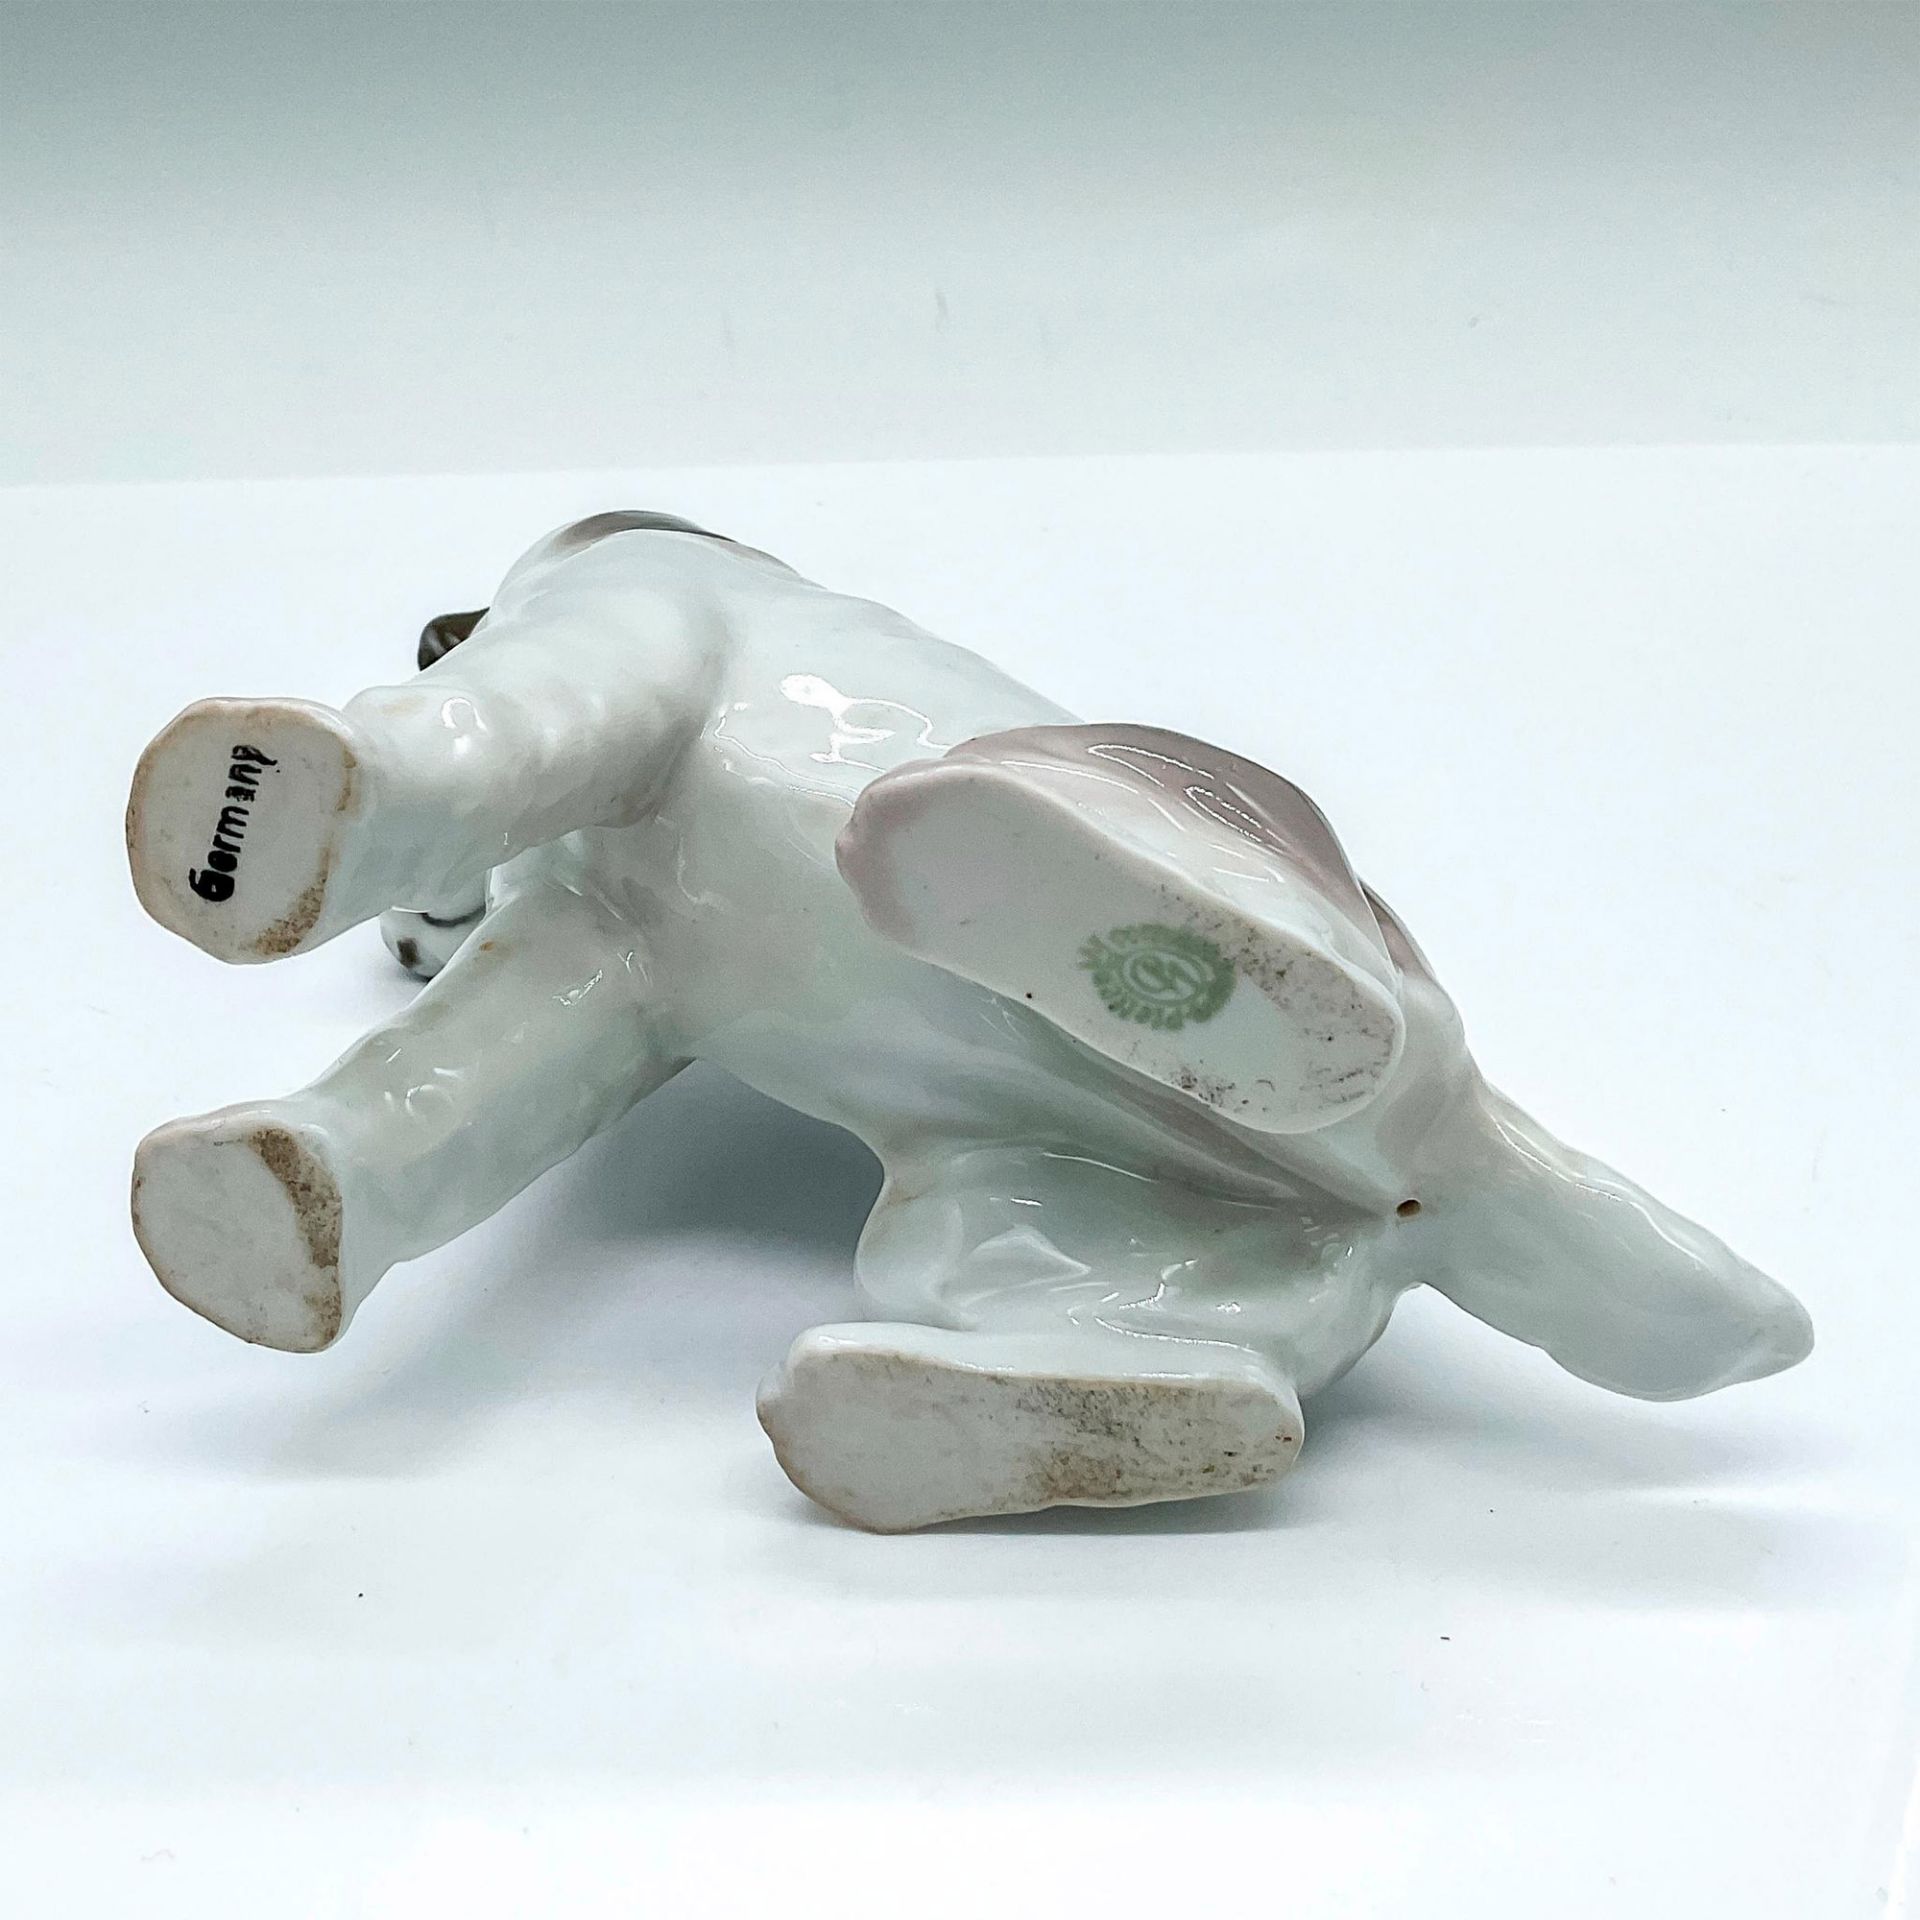 Vintage Pfeffer Porcelain German Dog Figurine - Image 3 of 3